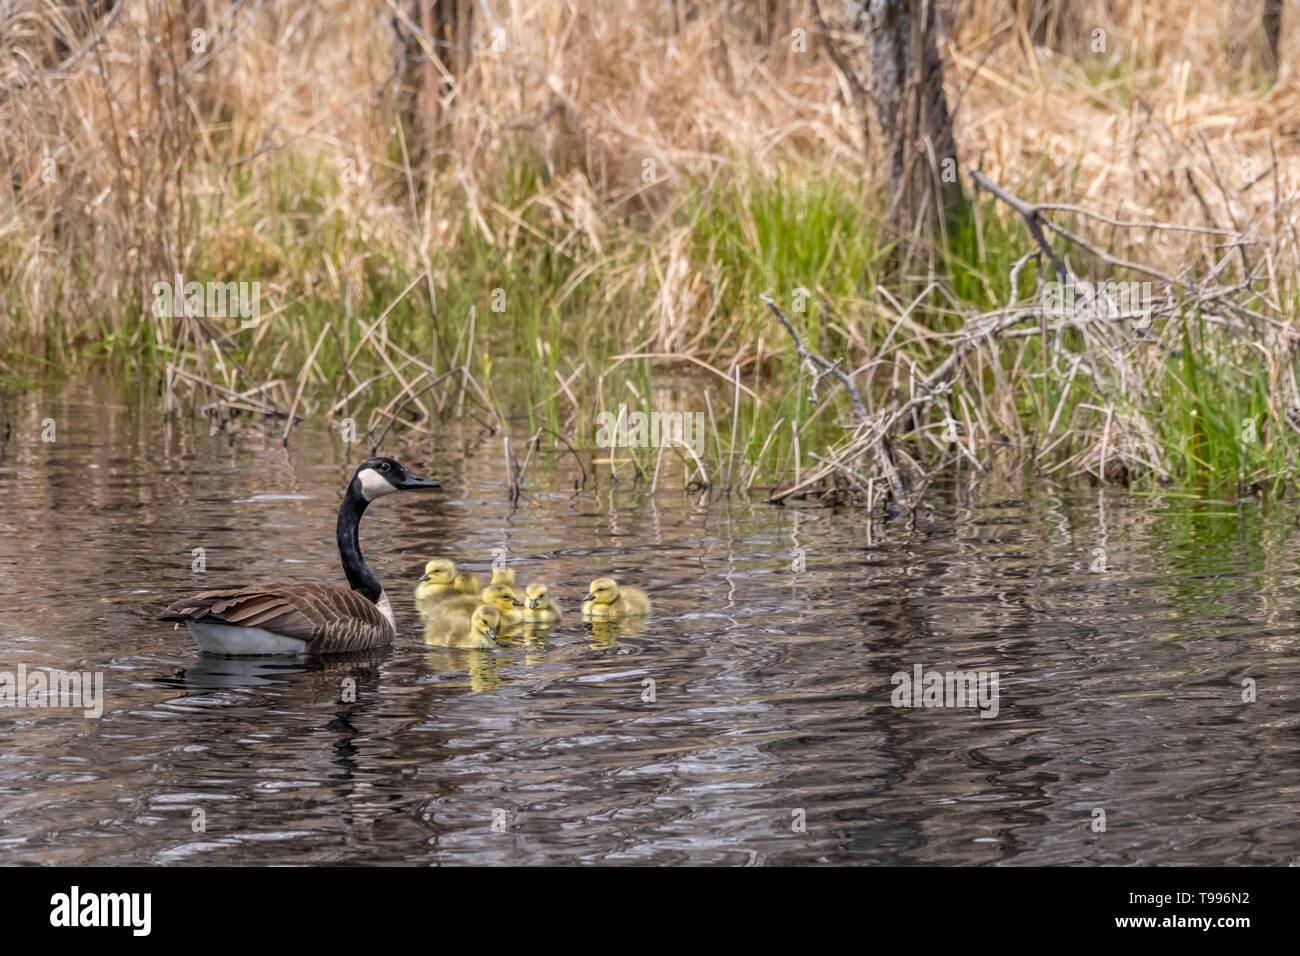 Los gansos de Canadá (Branta canadensis) adulto y cinco goslings (pichones) natación. Foto de stock